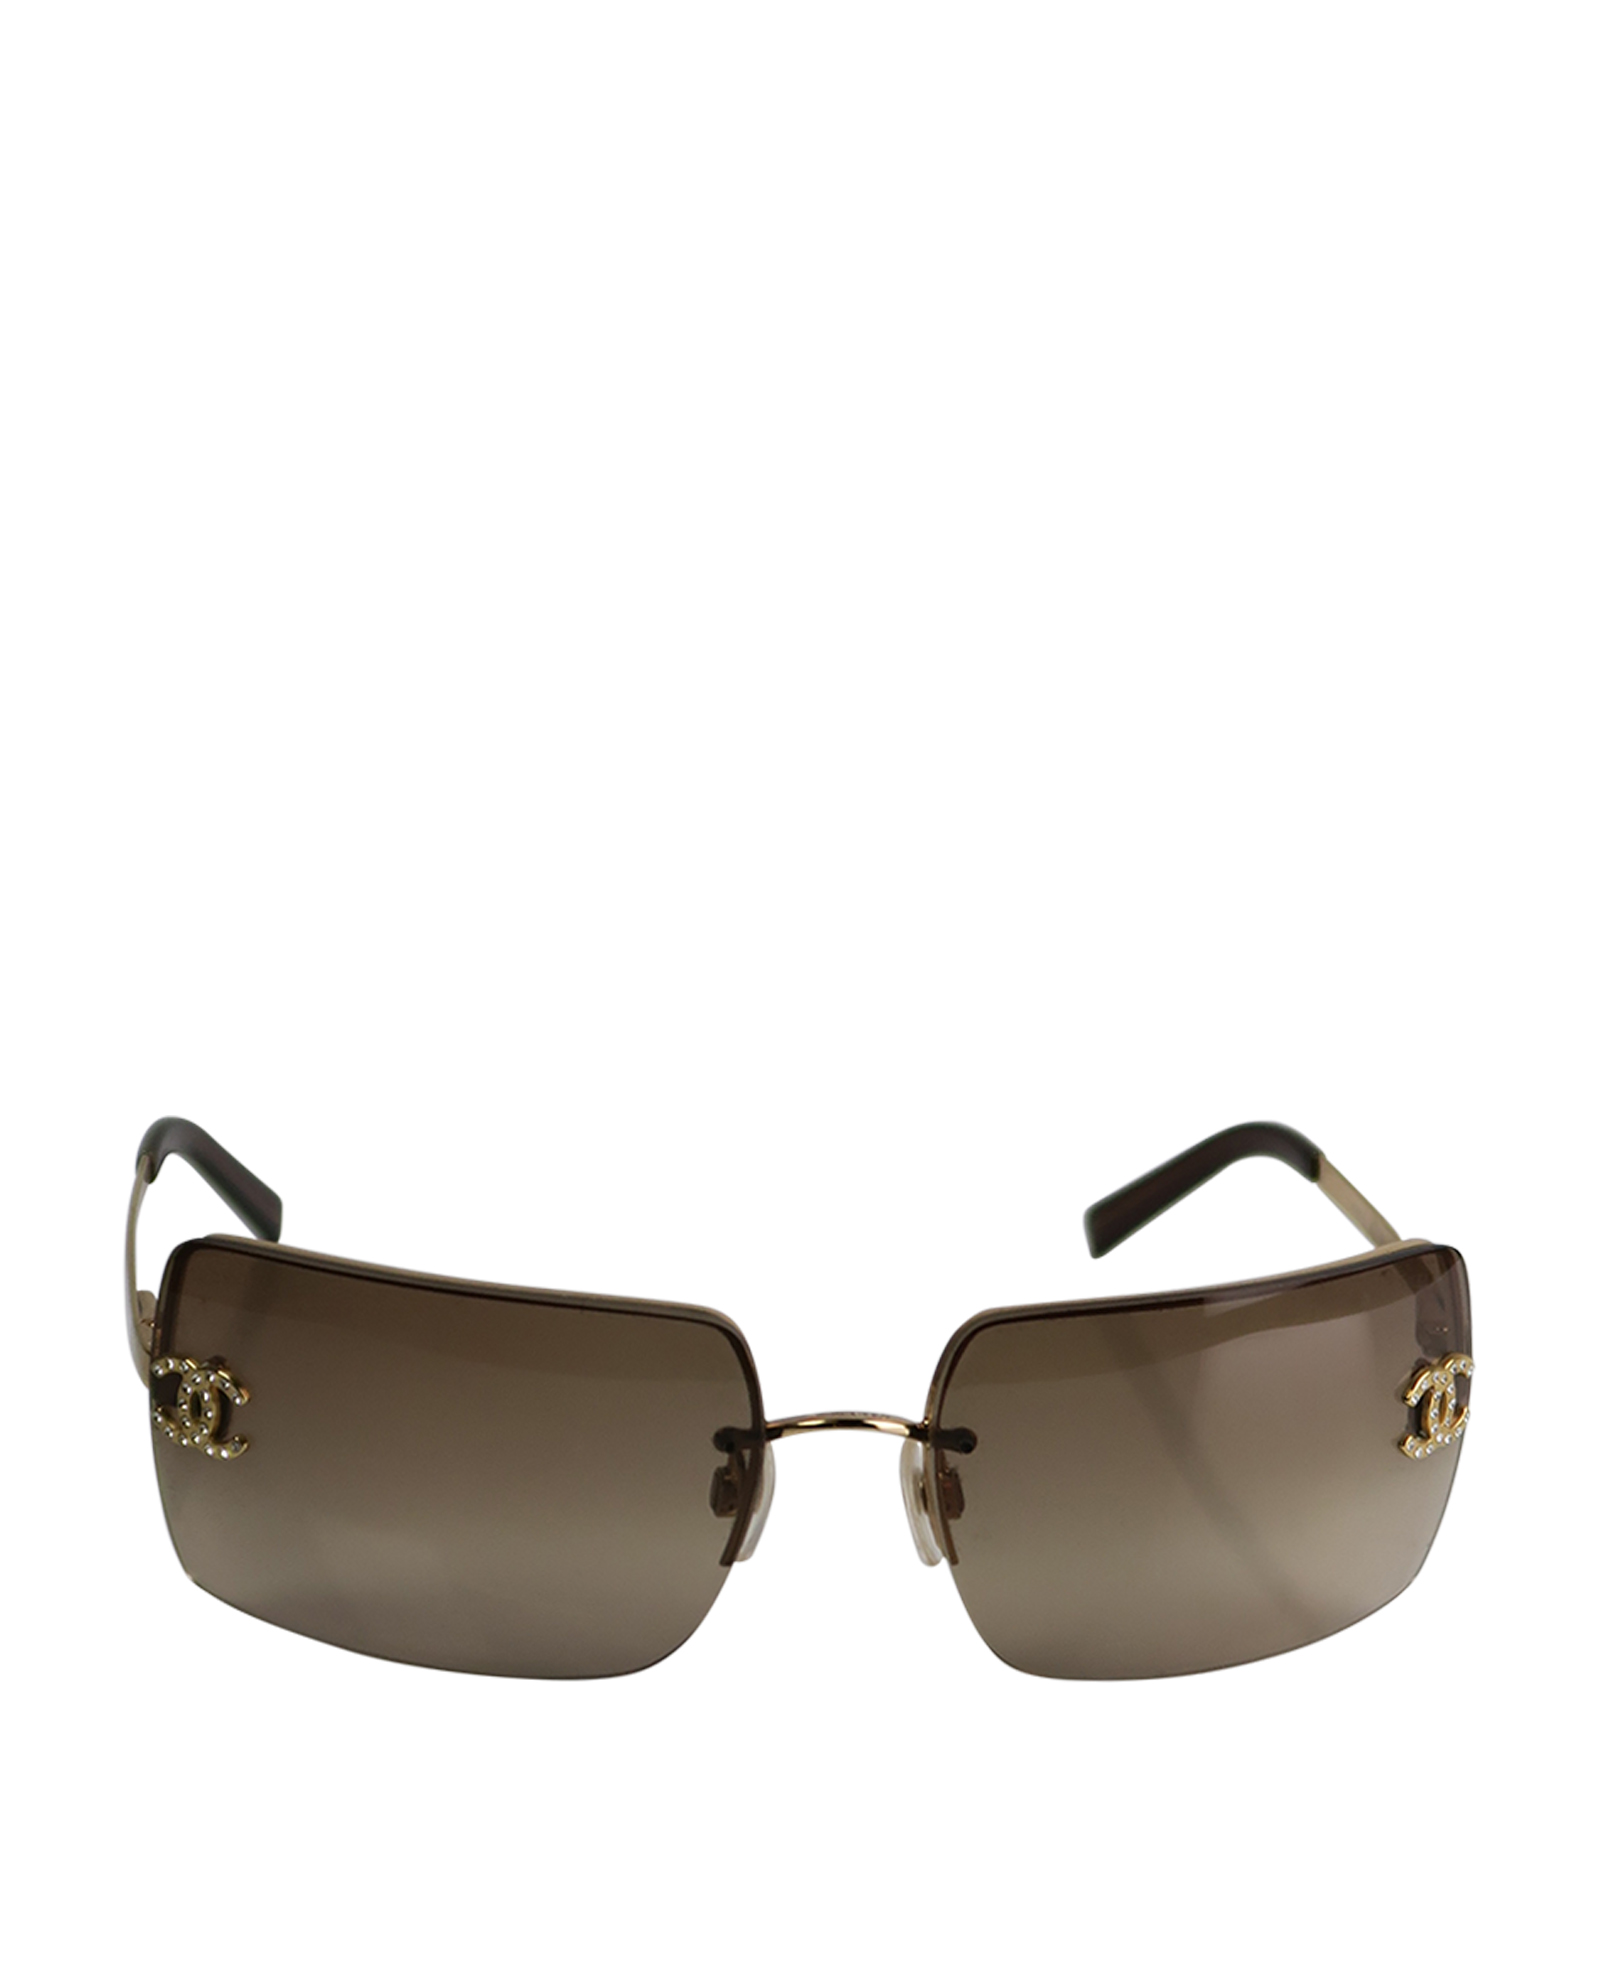 Chanel CC Crystal Embellished Sunglasses, Sunglasses - Designer Exchange